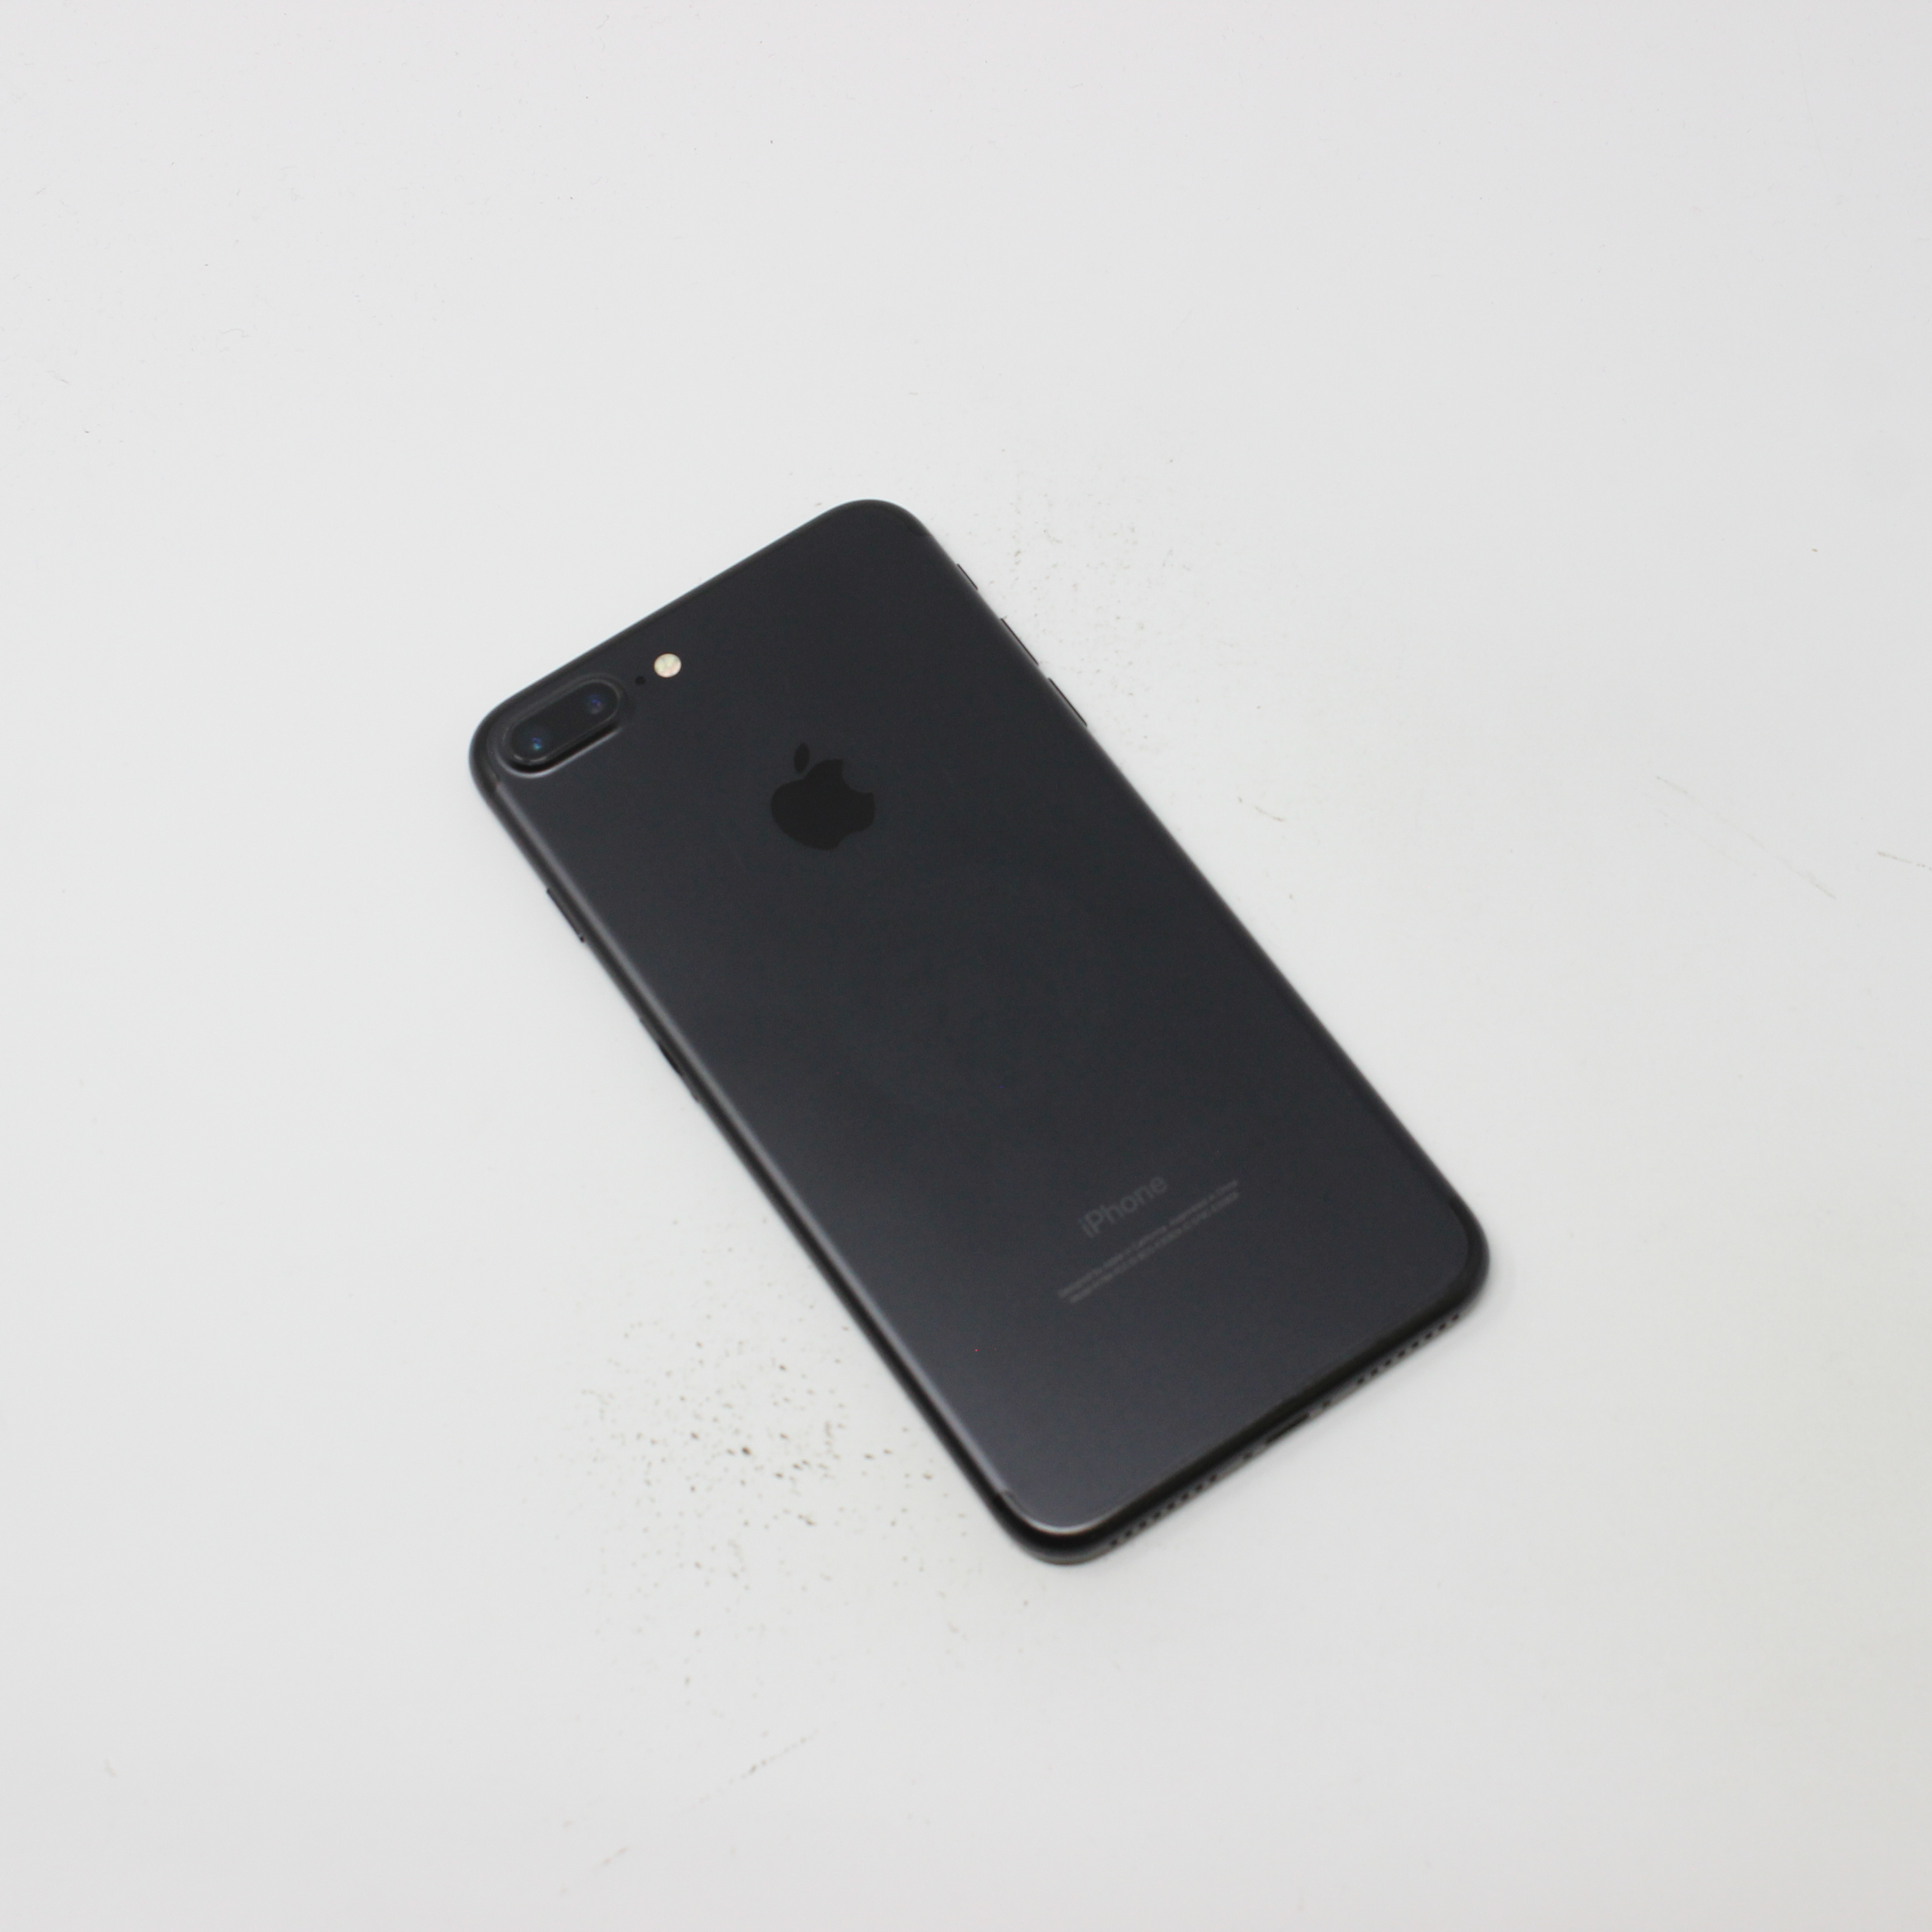 iPhone 7 Plus 128GB Black - Unlocked For Sale | UpTradeit.com